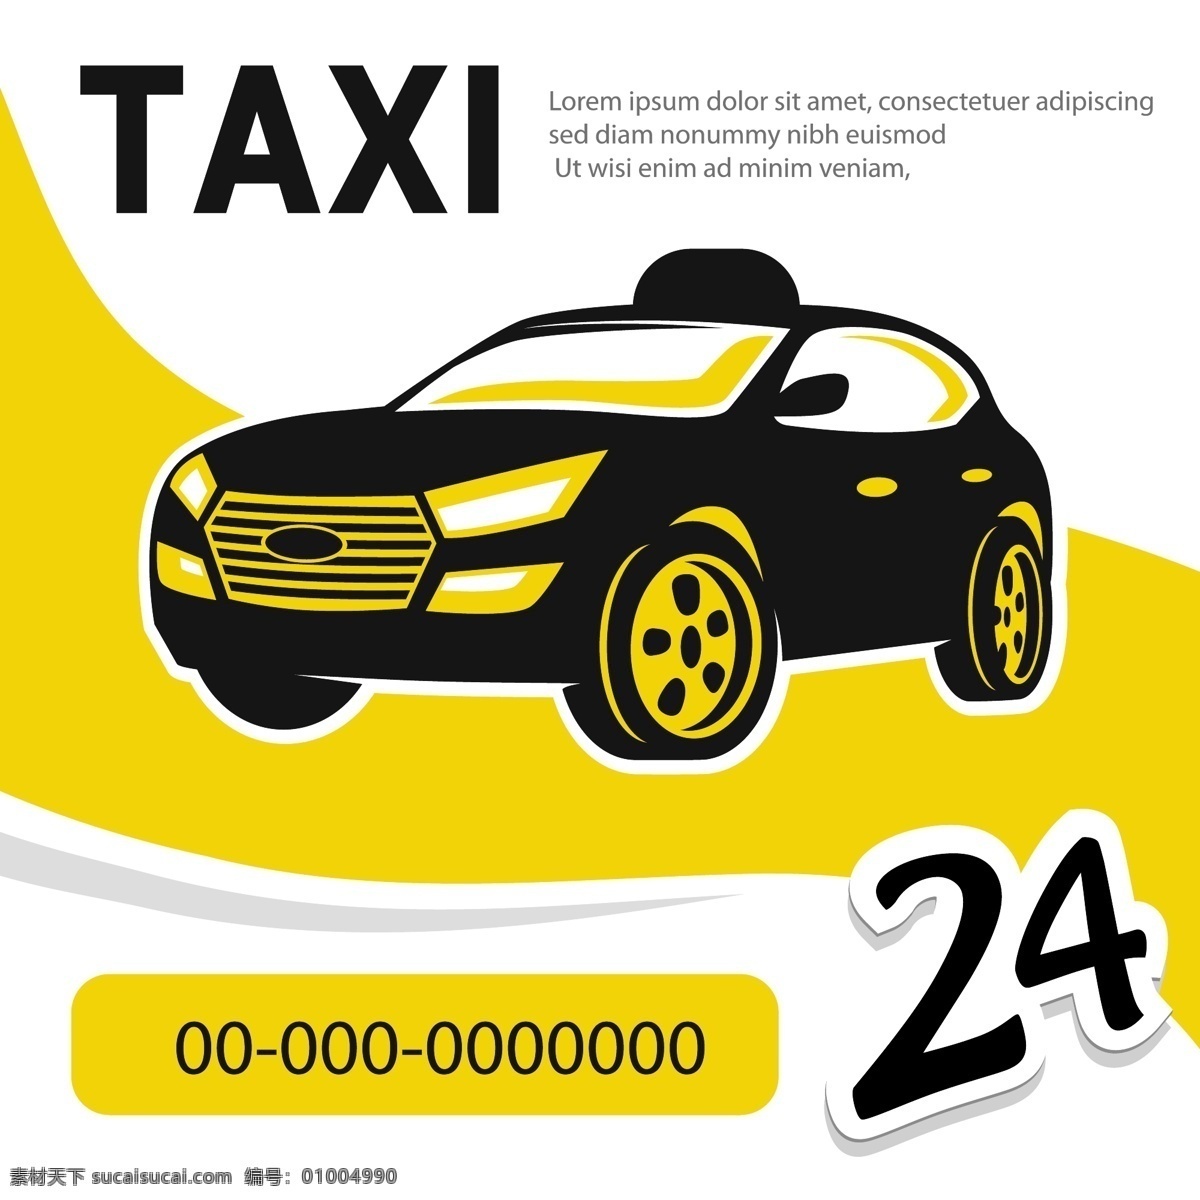 出租车 汽车 taxi 打的 的士 交通工具 矢量 现代科技